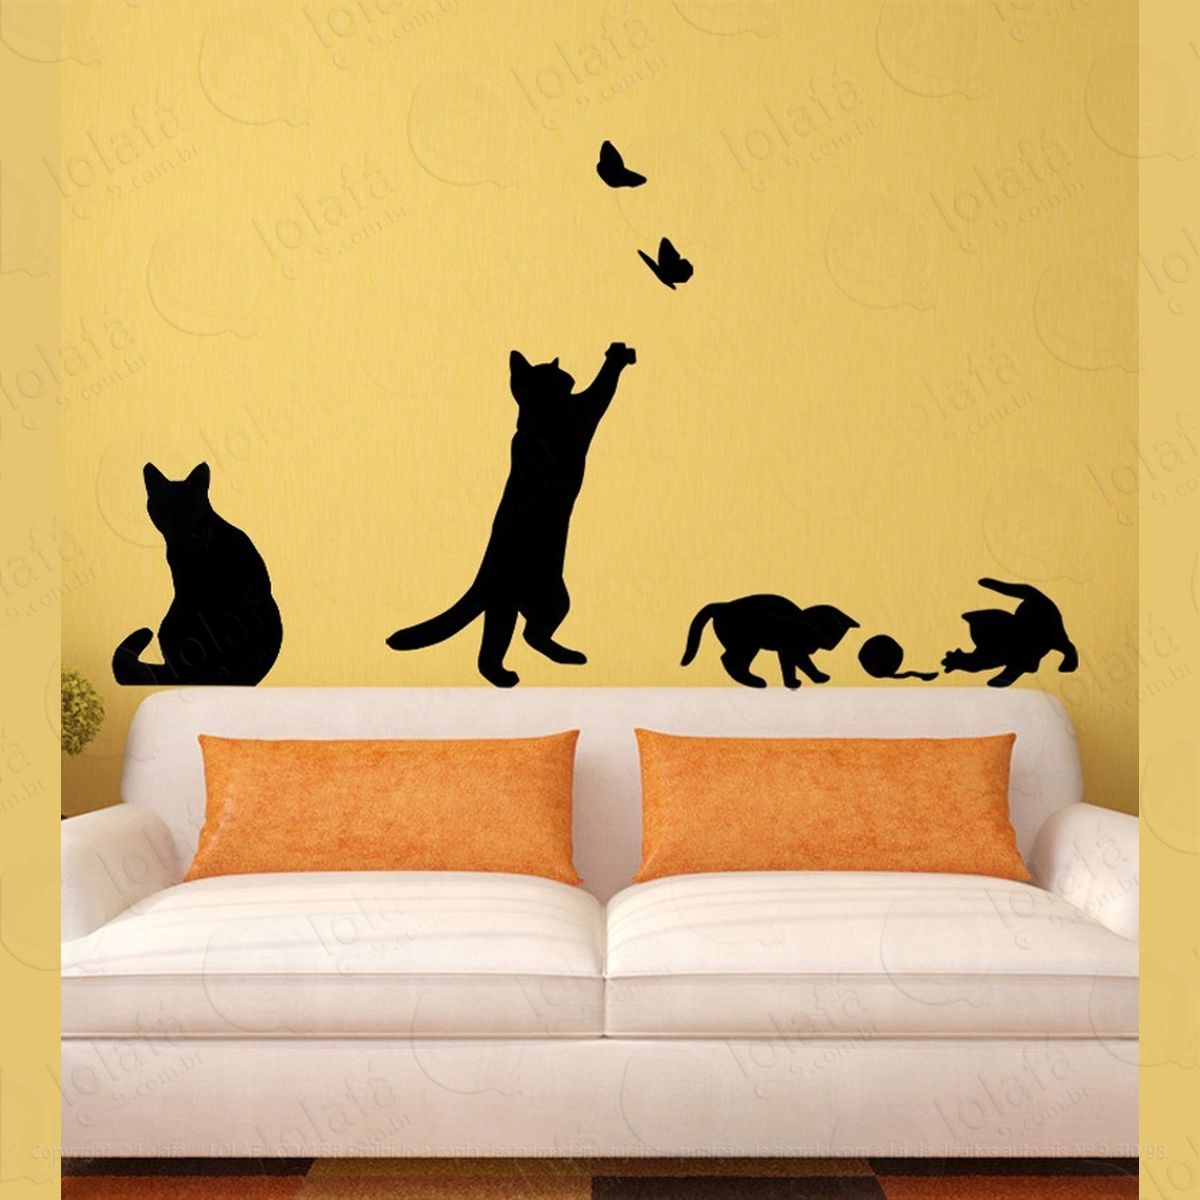 adesivo de parede decorativo gatinhos brincado mod:1094